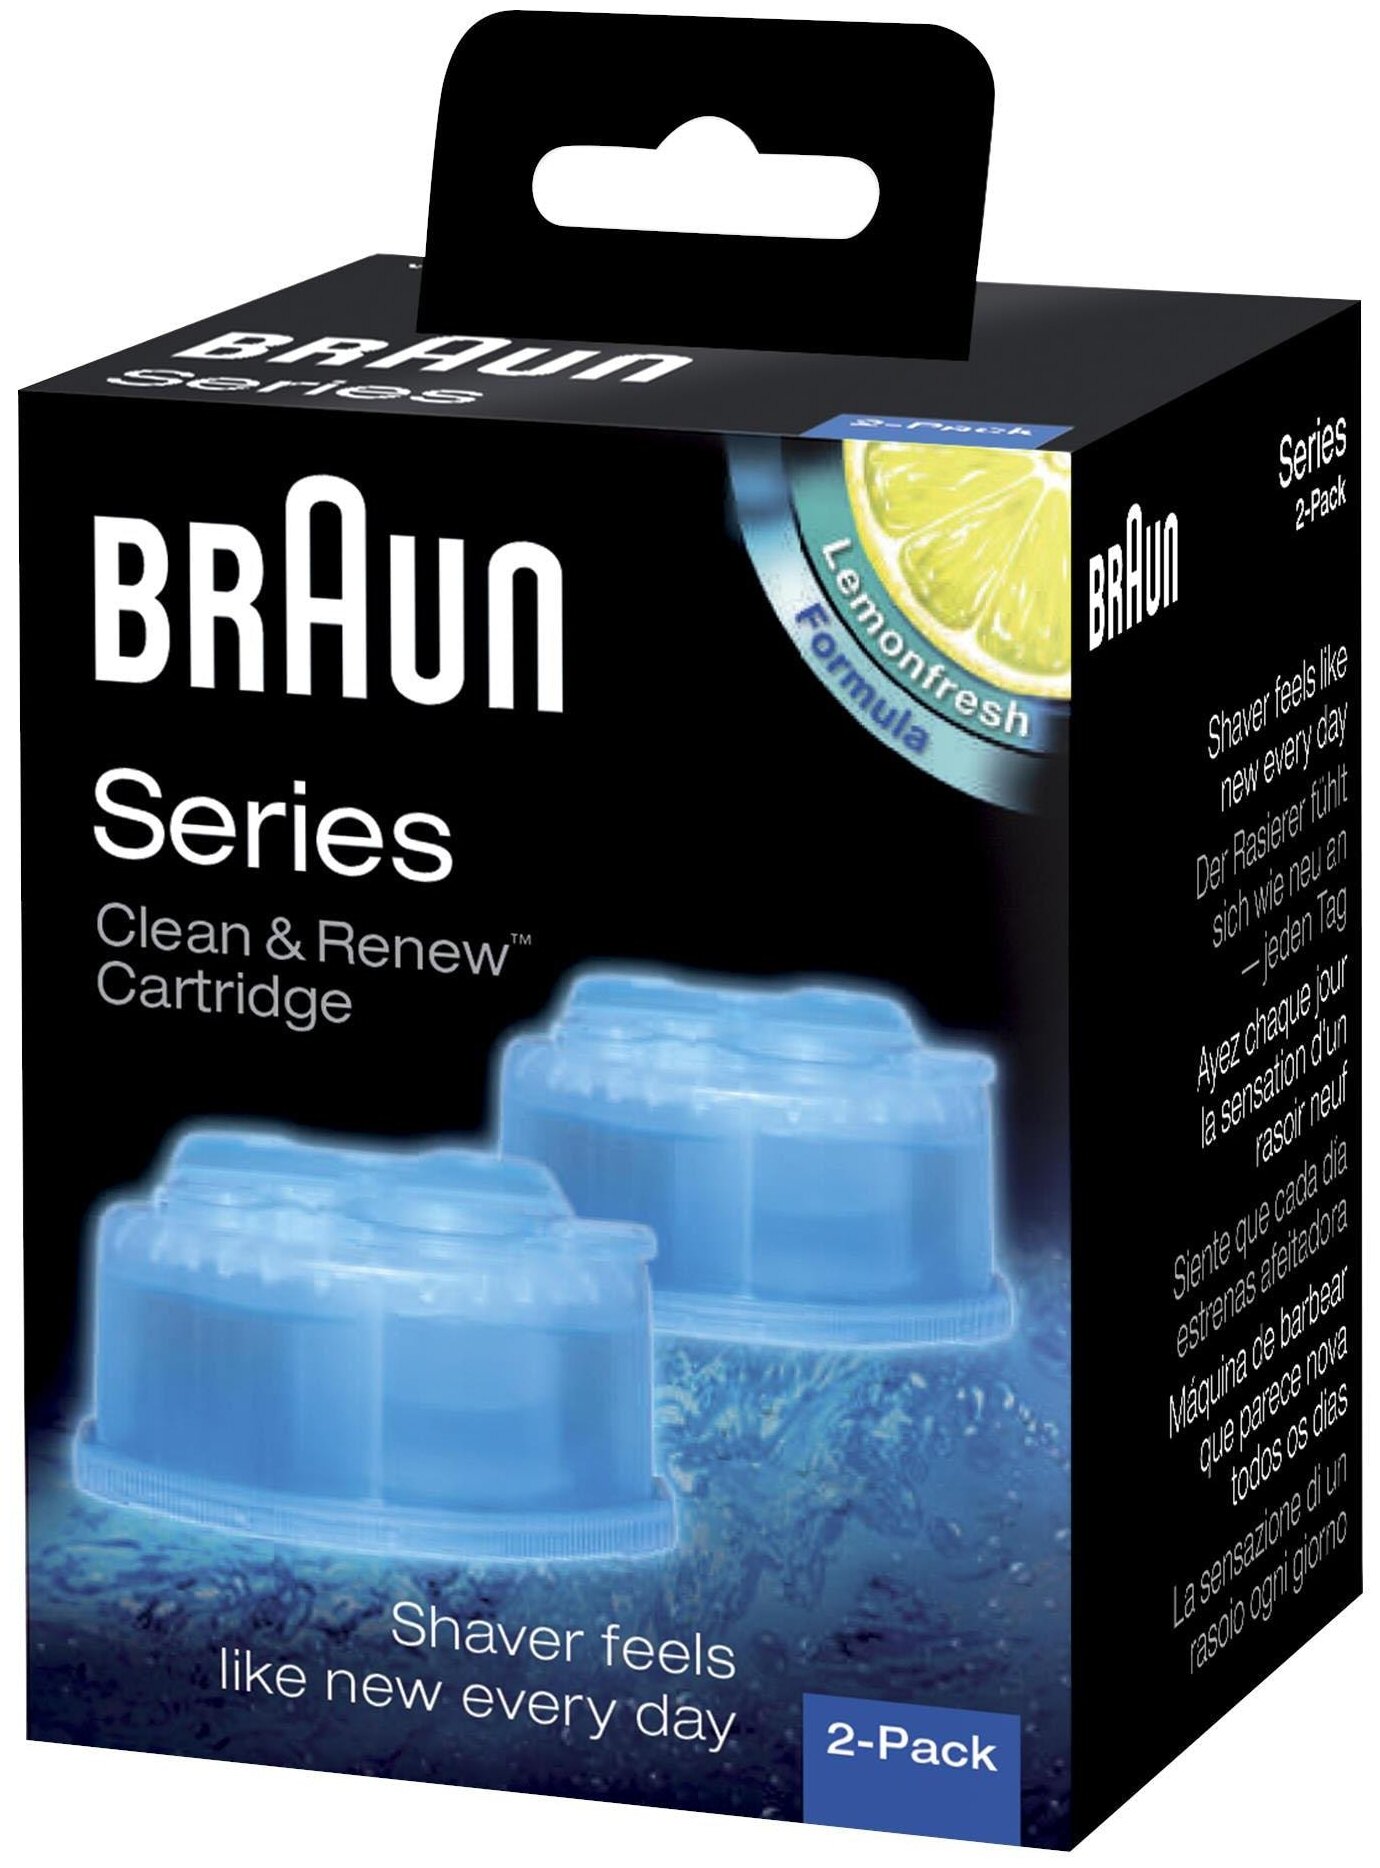 Картридж Braun Clean & Renew CCR, Series 6, голубой, 2 шт.